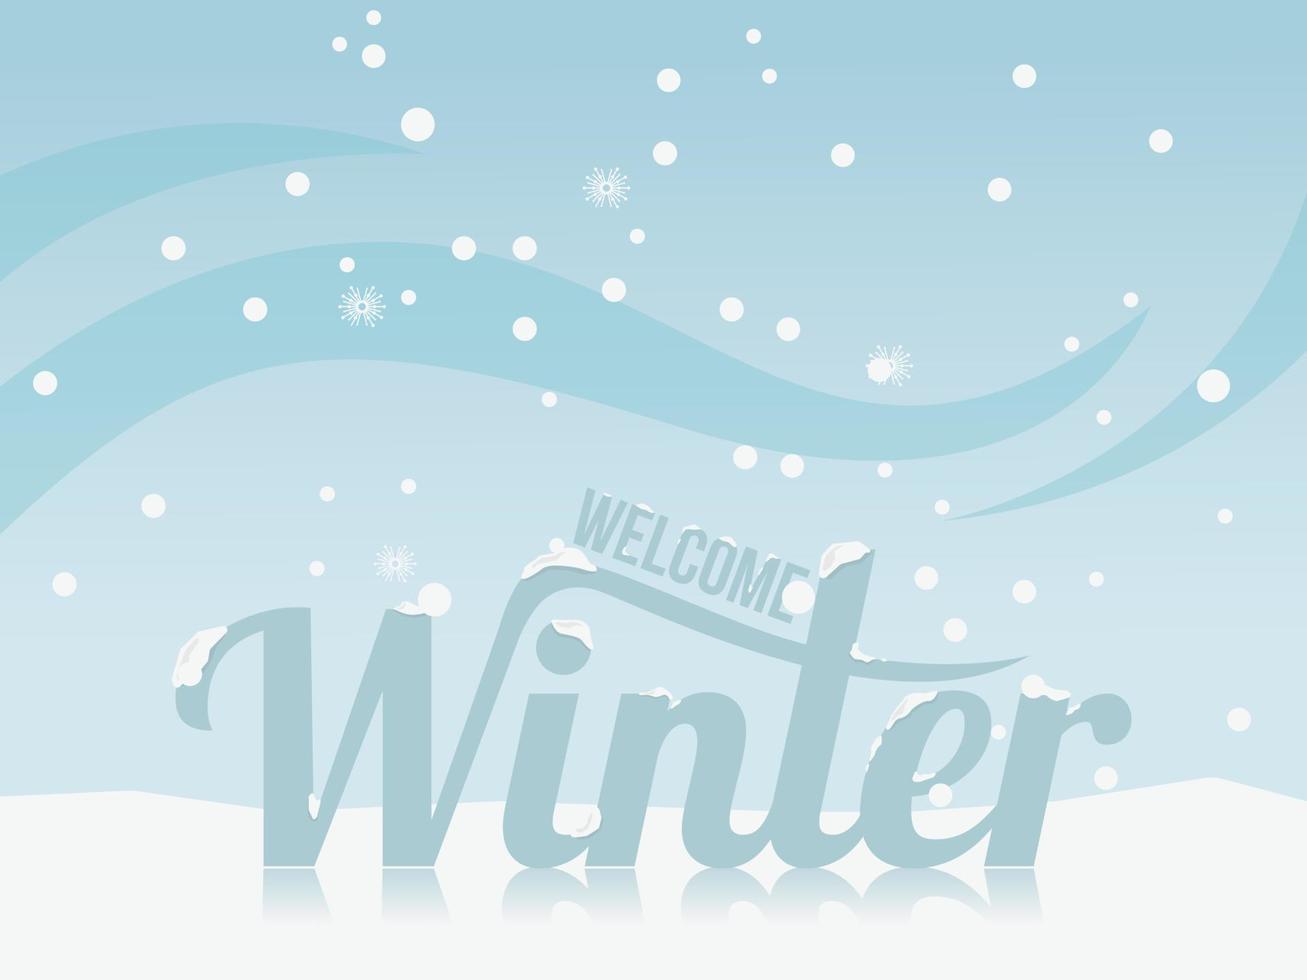 Welkom winter titel in sneeuw achtergrond vector illustratie